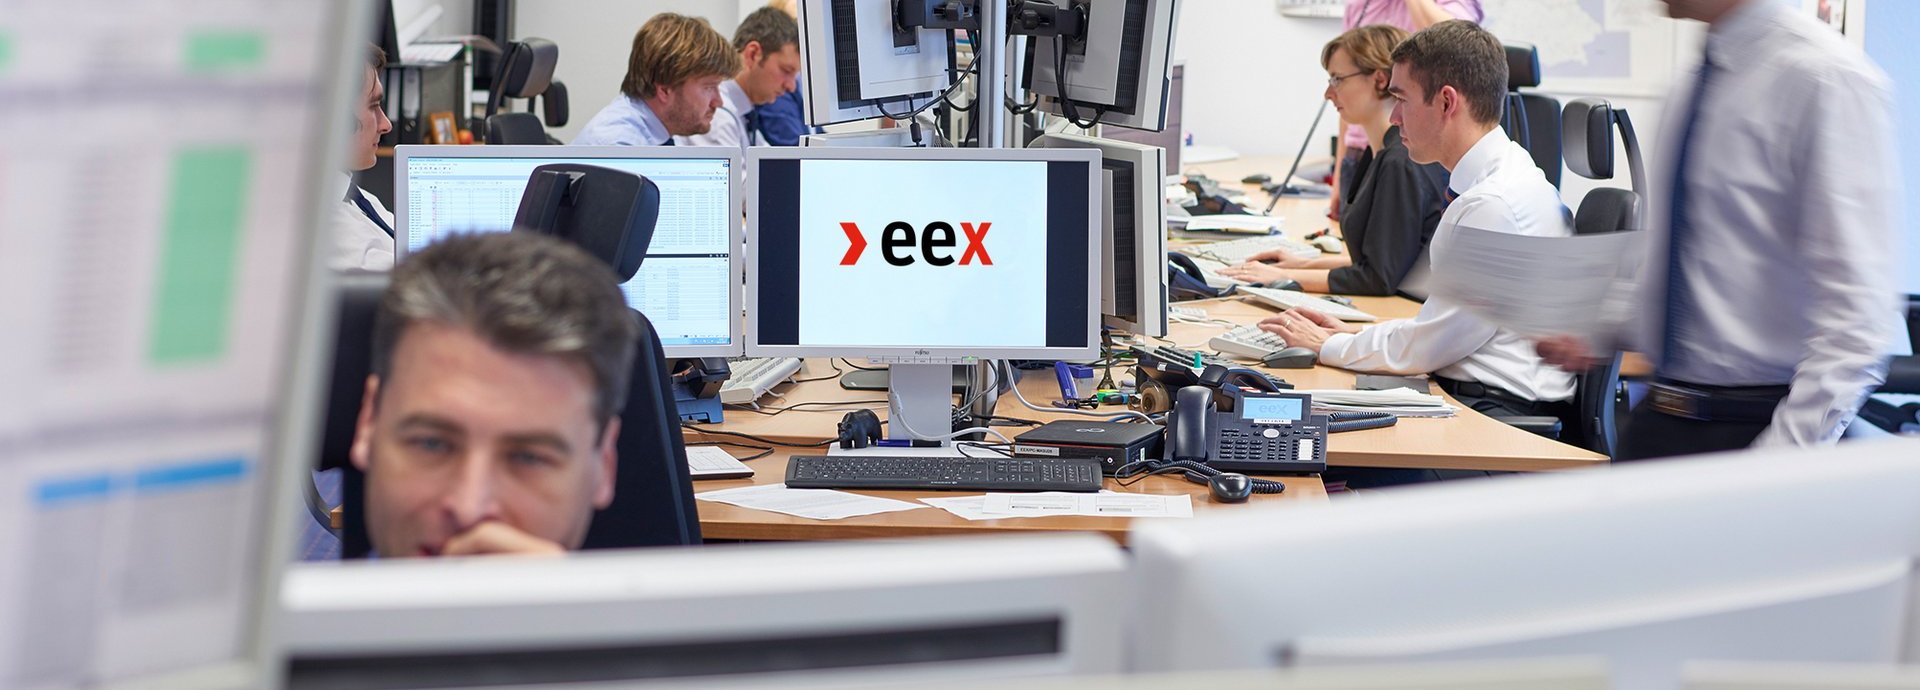 Mehrere Menschen in Business-Kleidung arbeiten in einem Büro an Rechnern. Auf einem Bildschirm in der Mette ist das >eex Logo